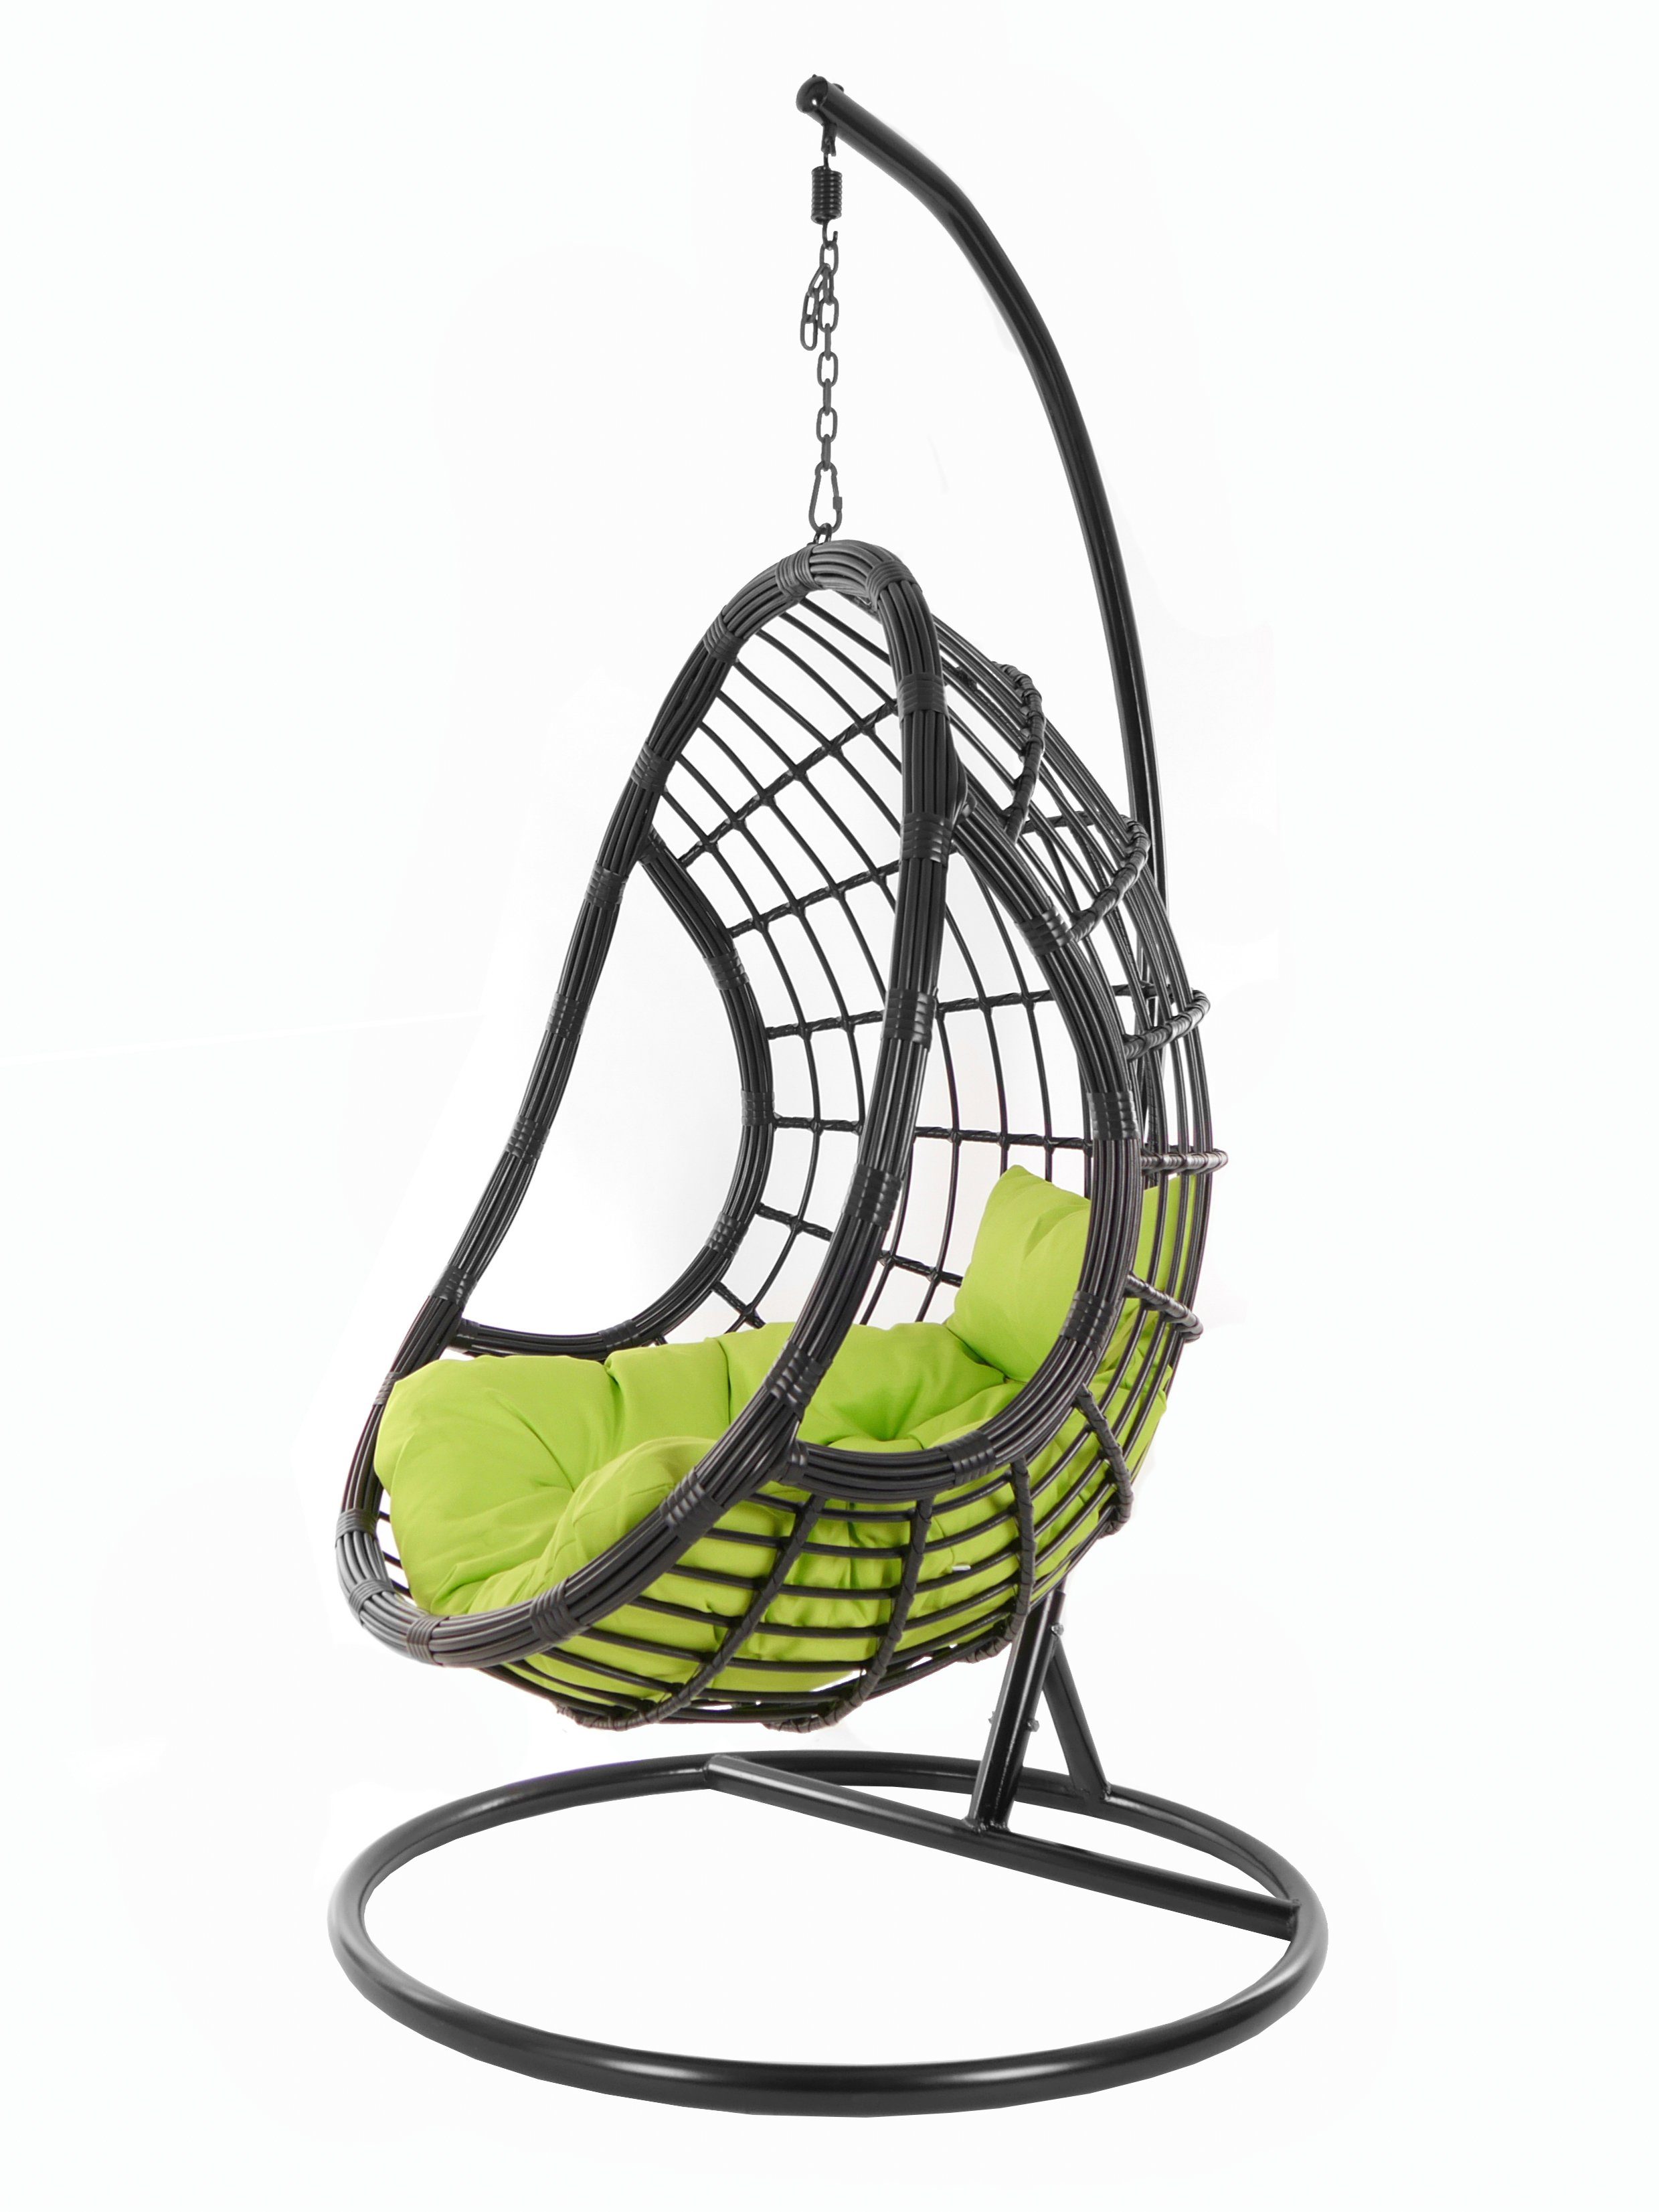 KIDEO Hängesessel PALMANOVA schwarz, und apple Swing Hängesessel green) (6068 Gestell Design Schwebesessel, black, mit edles apfelgrün Loungemöbel, Chair, Kissen